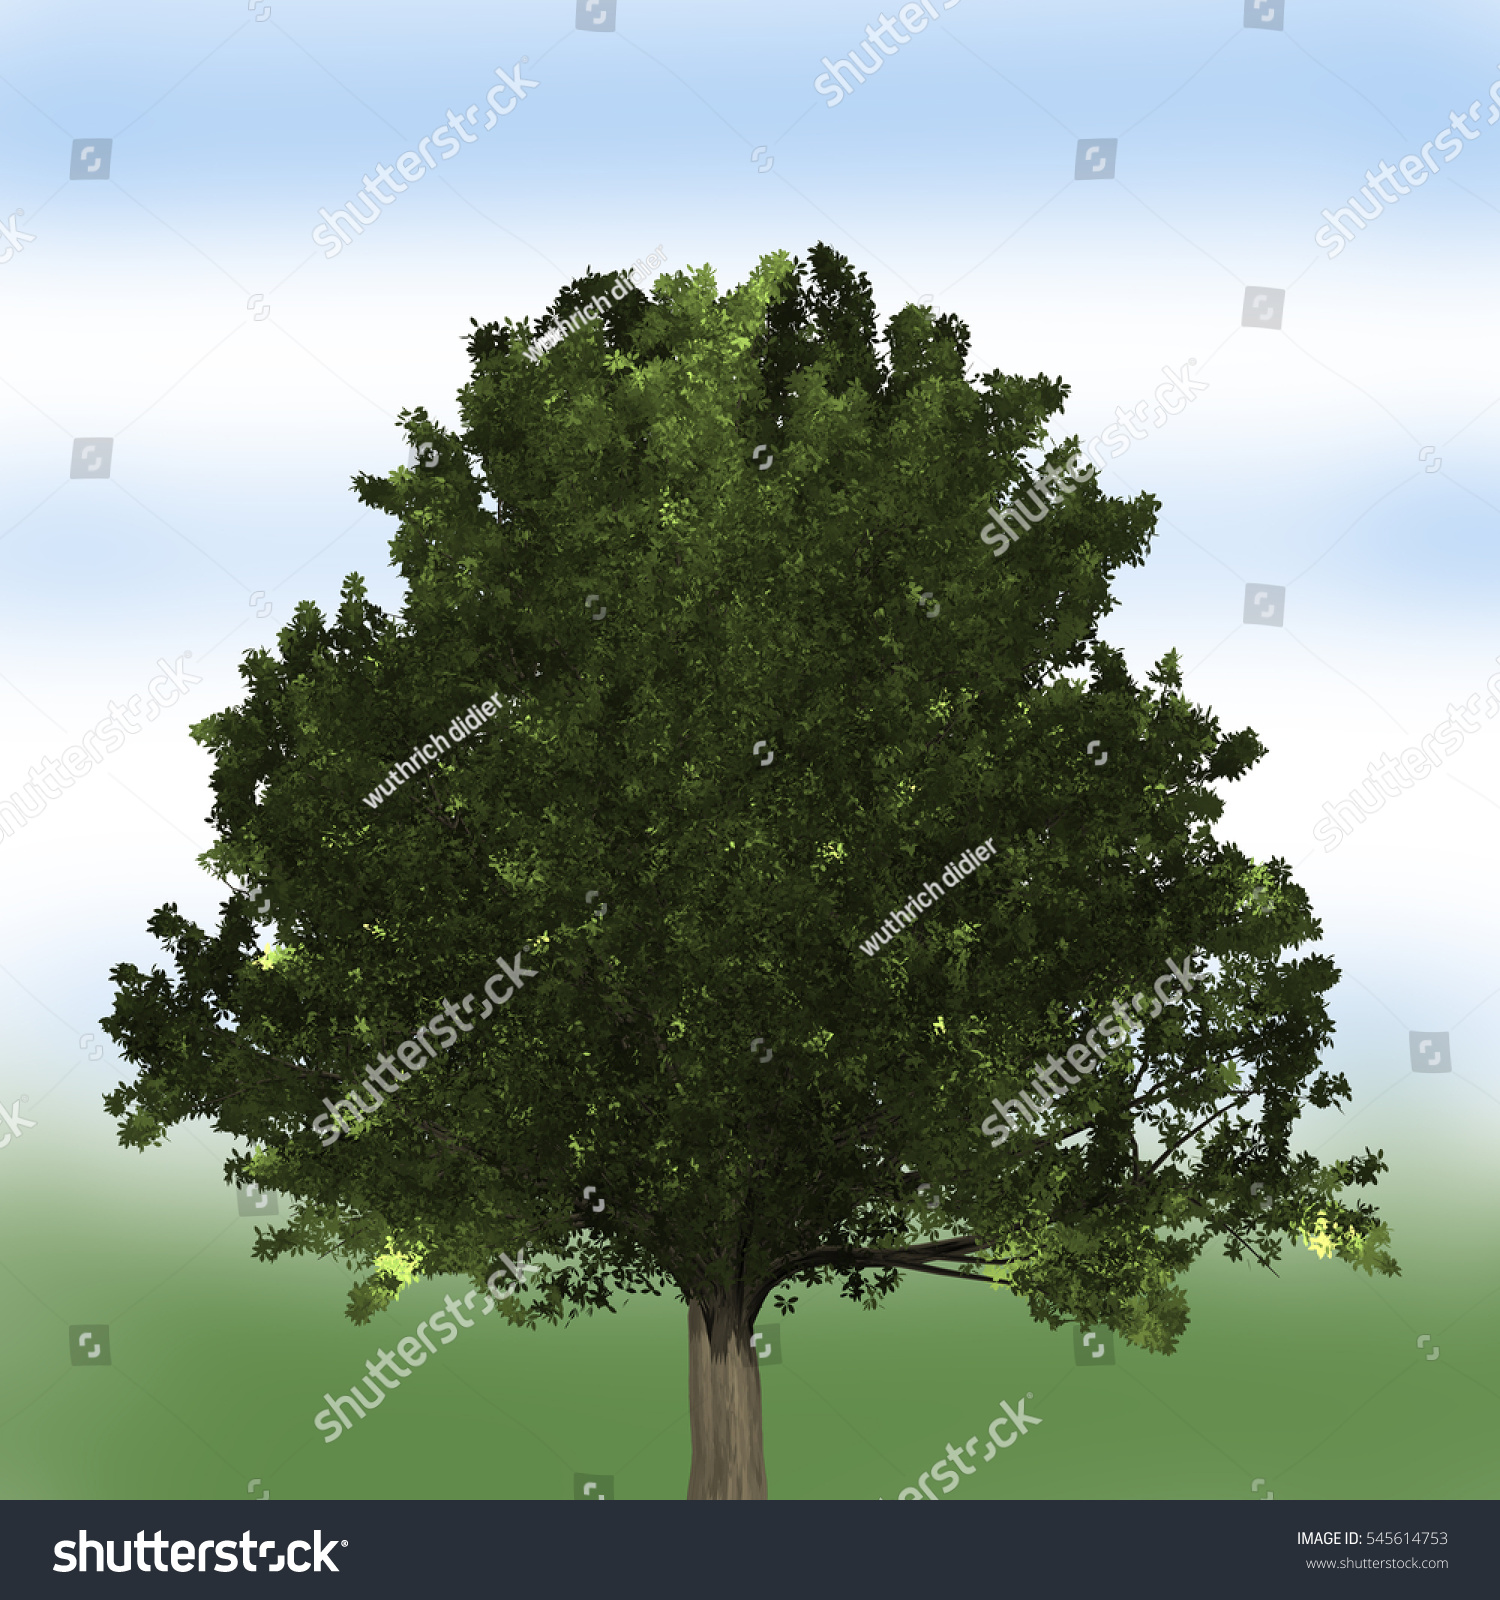 Oak Tree Stock Photo 545614753 - Shutterstock